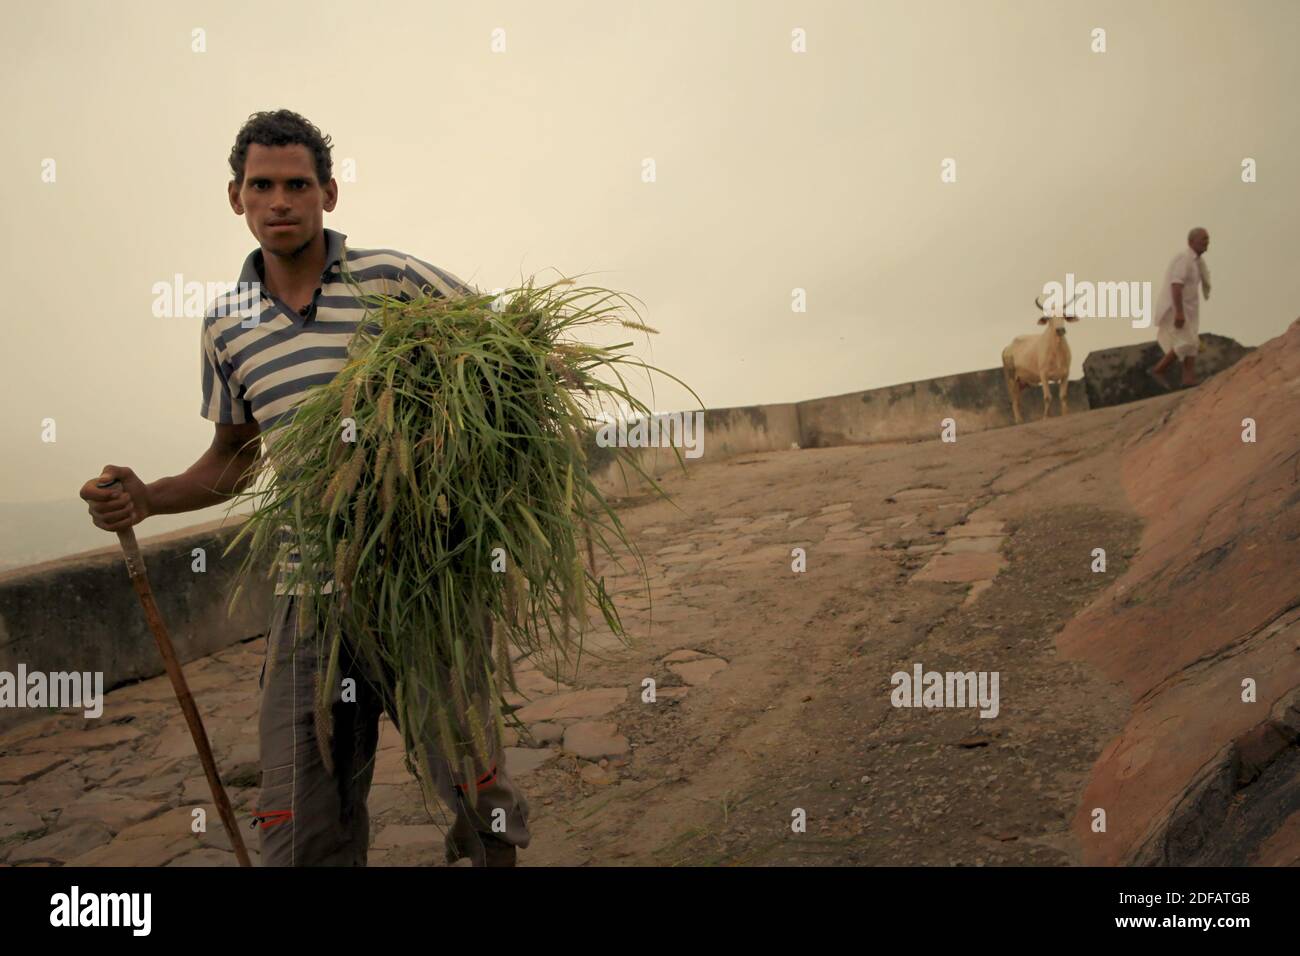 Ein Mann, der Gräser trägt, um Vieh auf einer Straße zu füttern, die zu Surya Mandir (Sonnentempel) in Jaipur, Rajasthan, Indien führt. Stockfoto